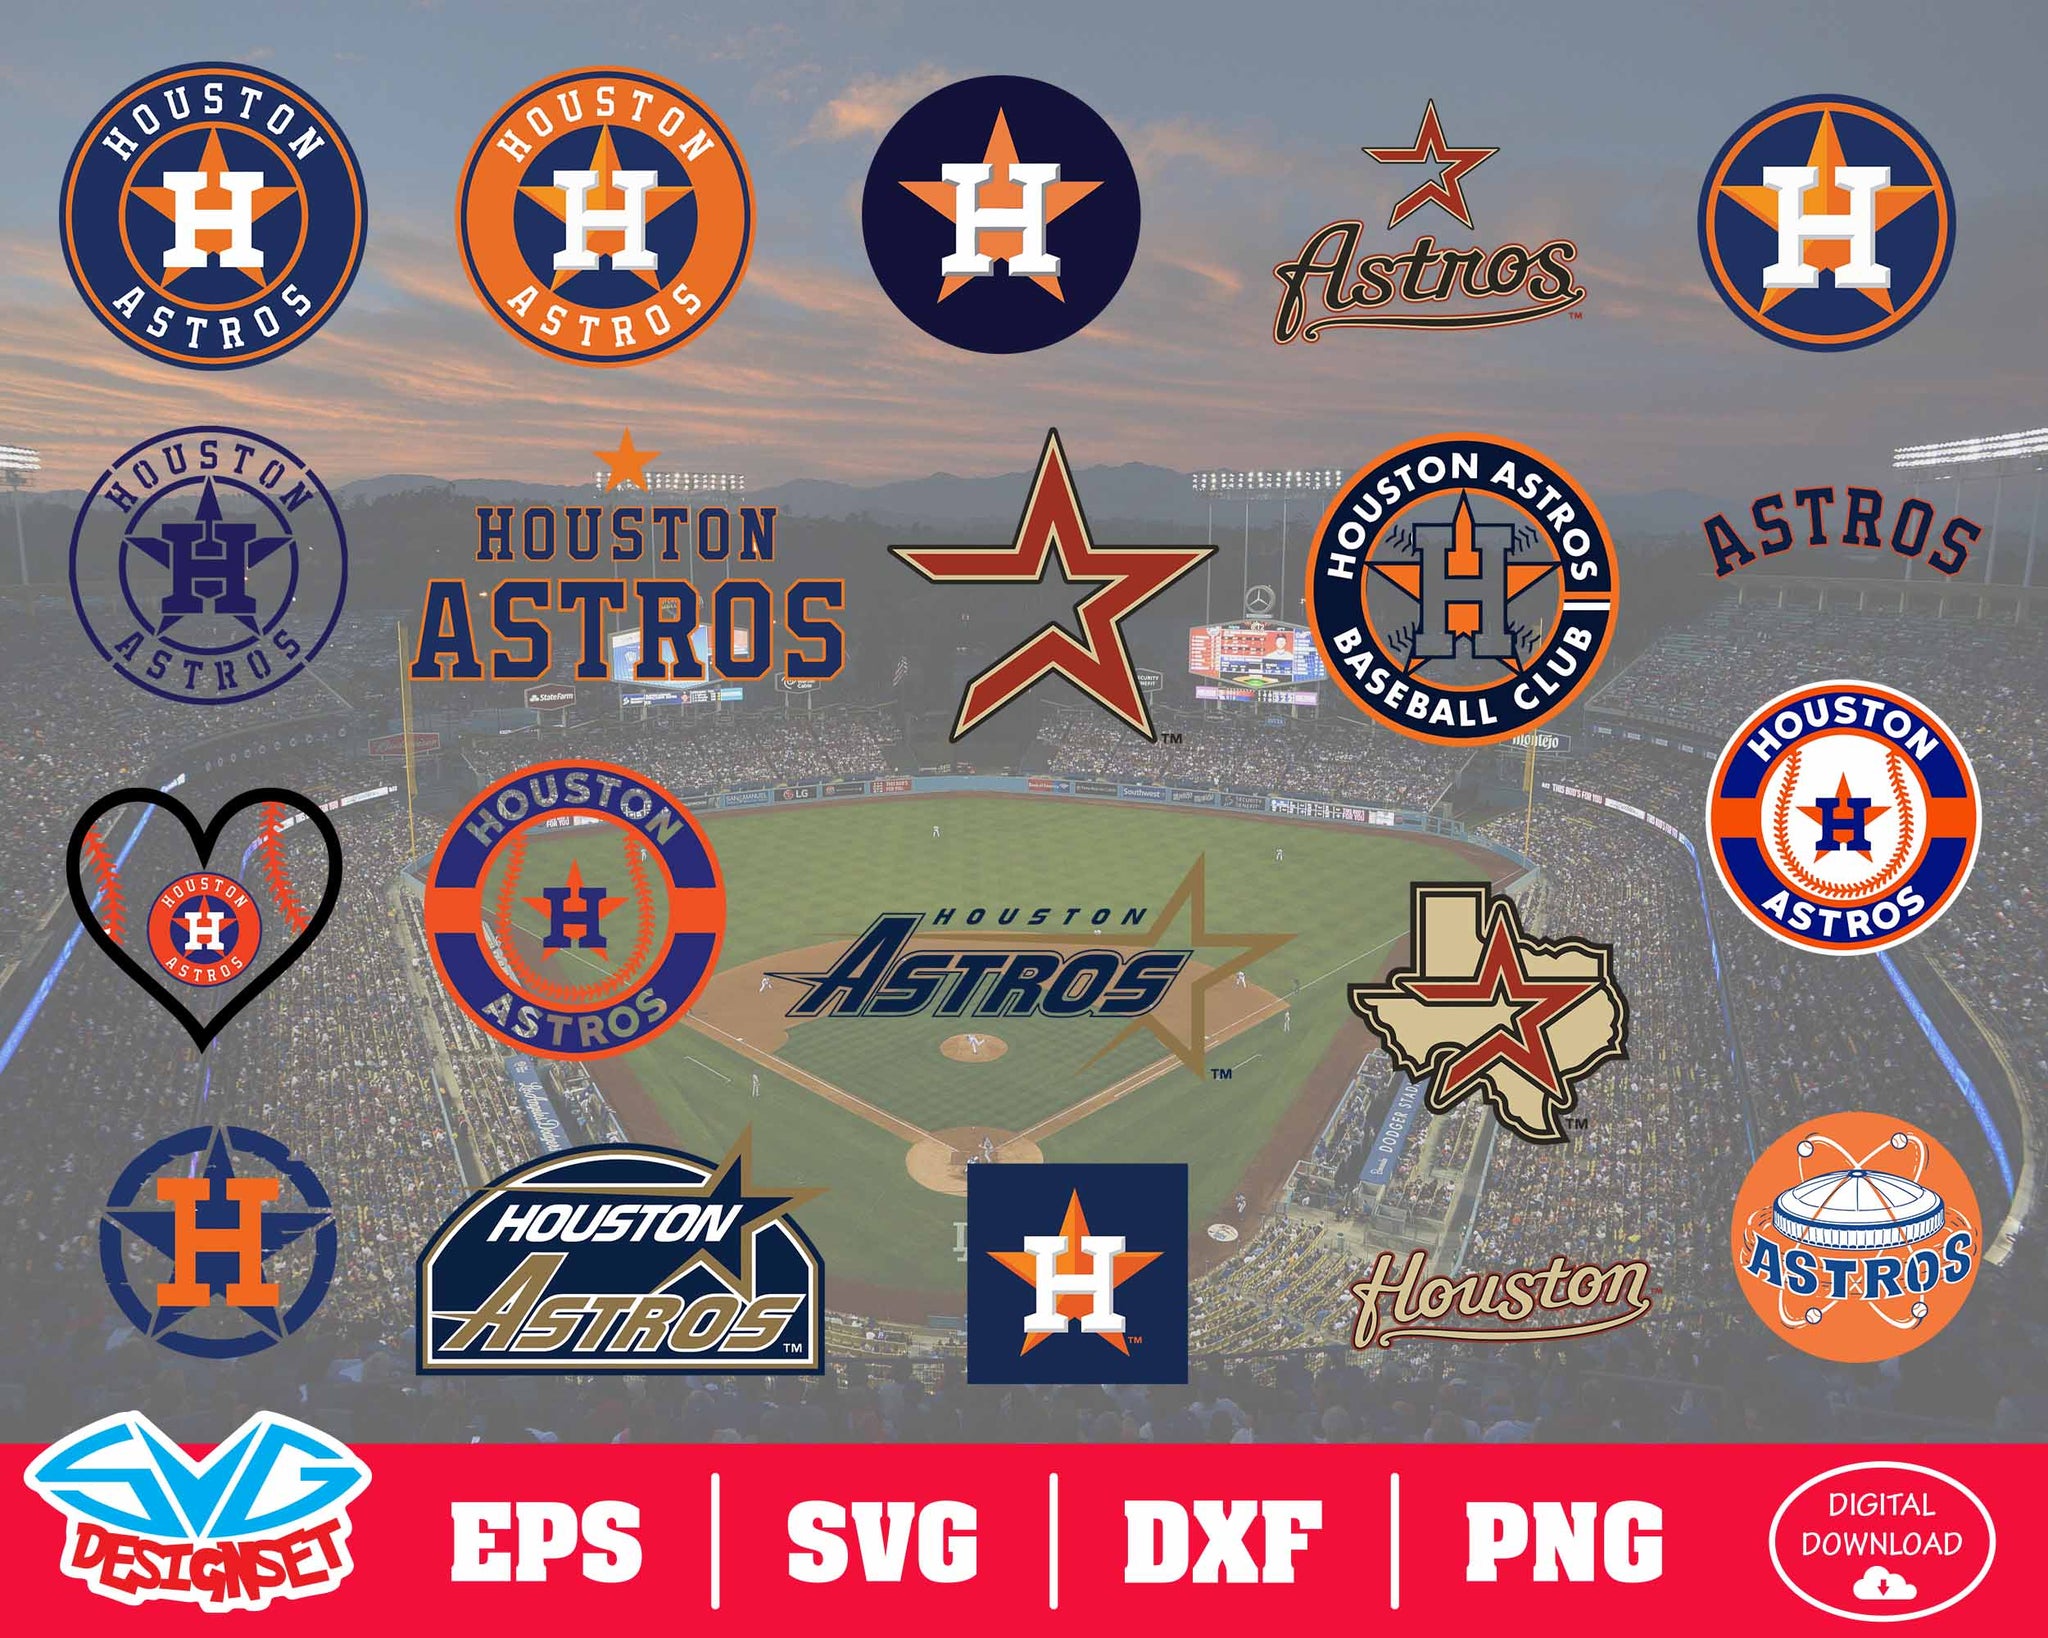 Astros baseball team SVG, Astros baseball SVG, Houston baseball SVG